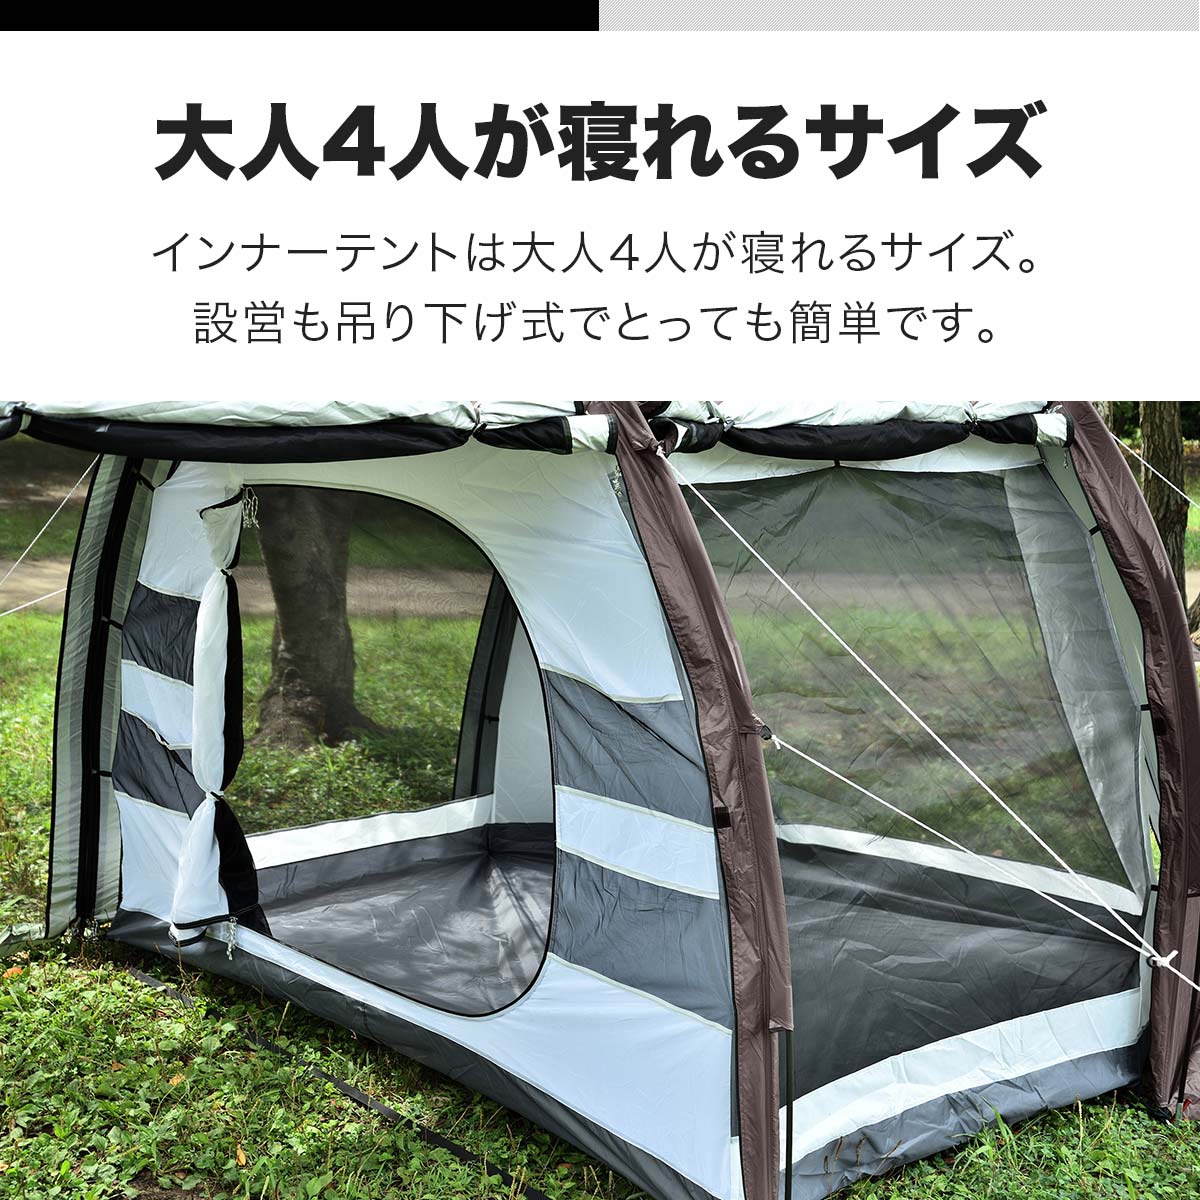 楽天市場】FIELDOOR テント 大型 ドームテント トンネルテント 480